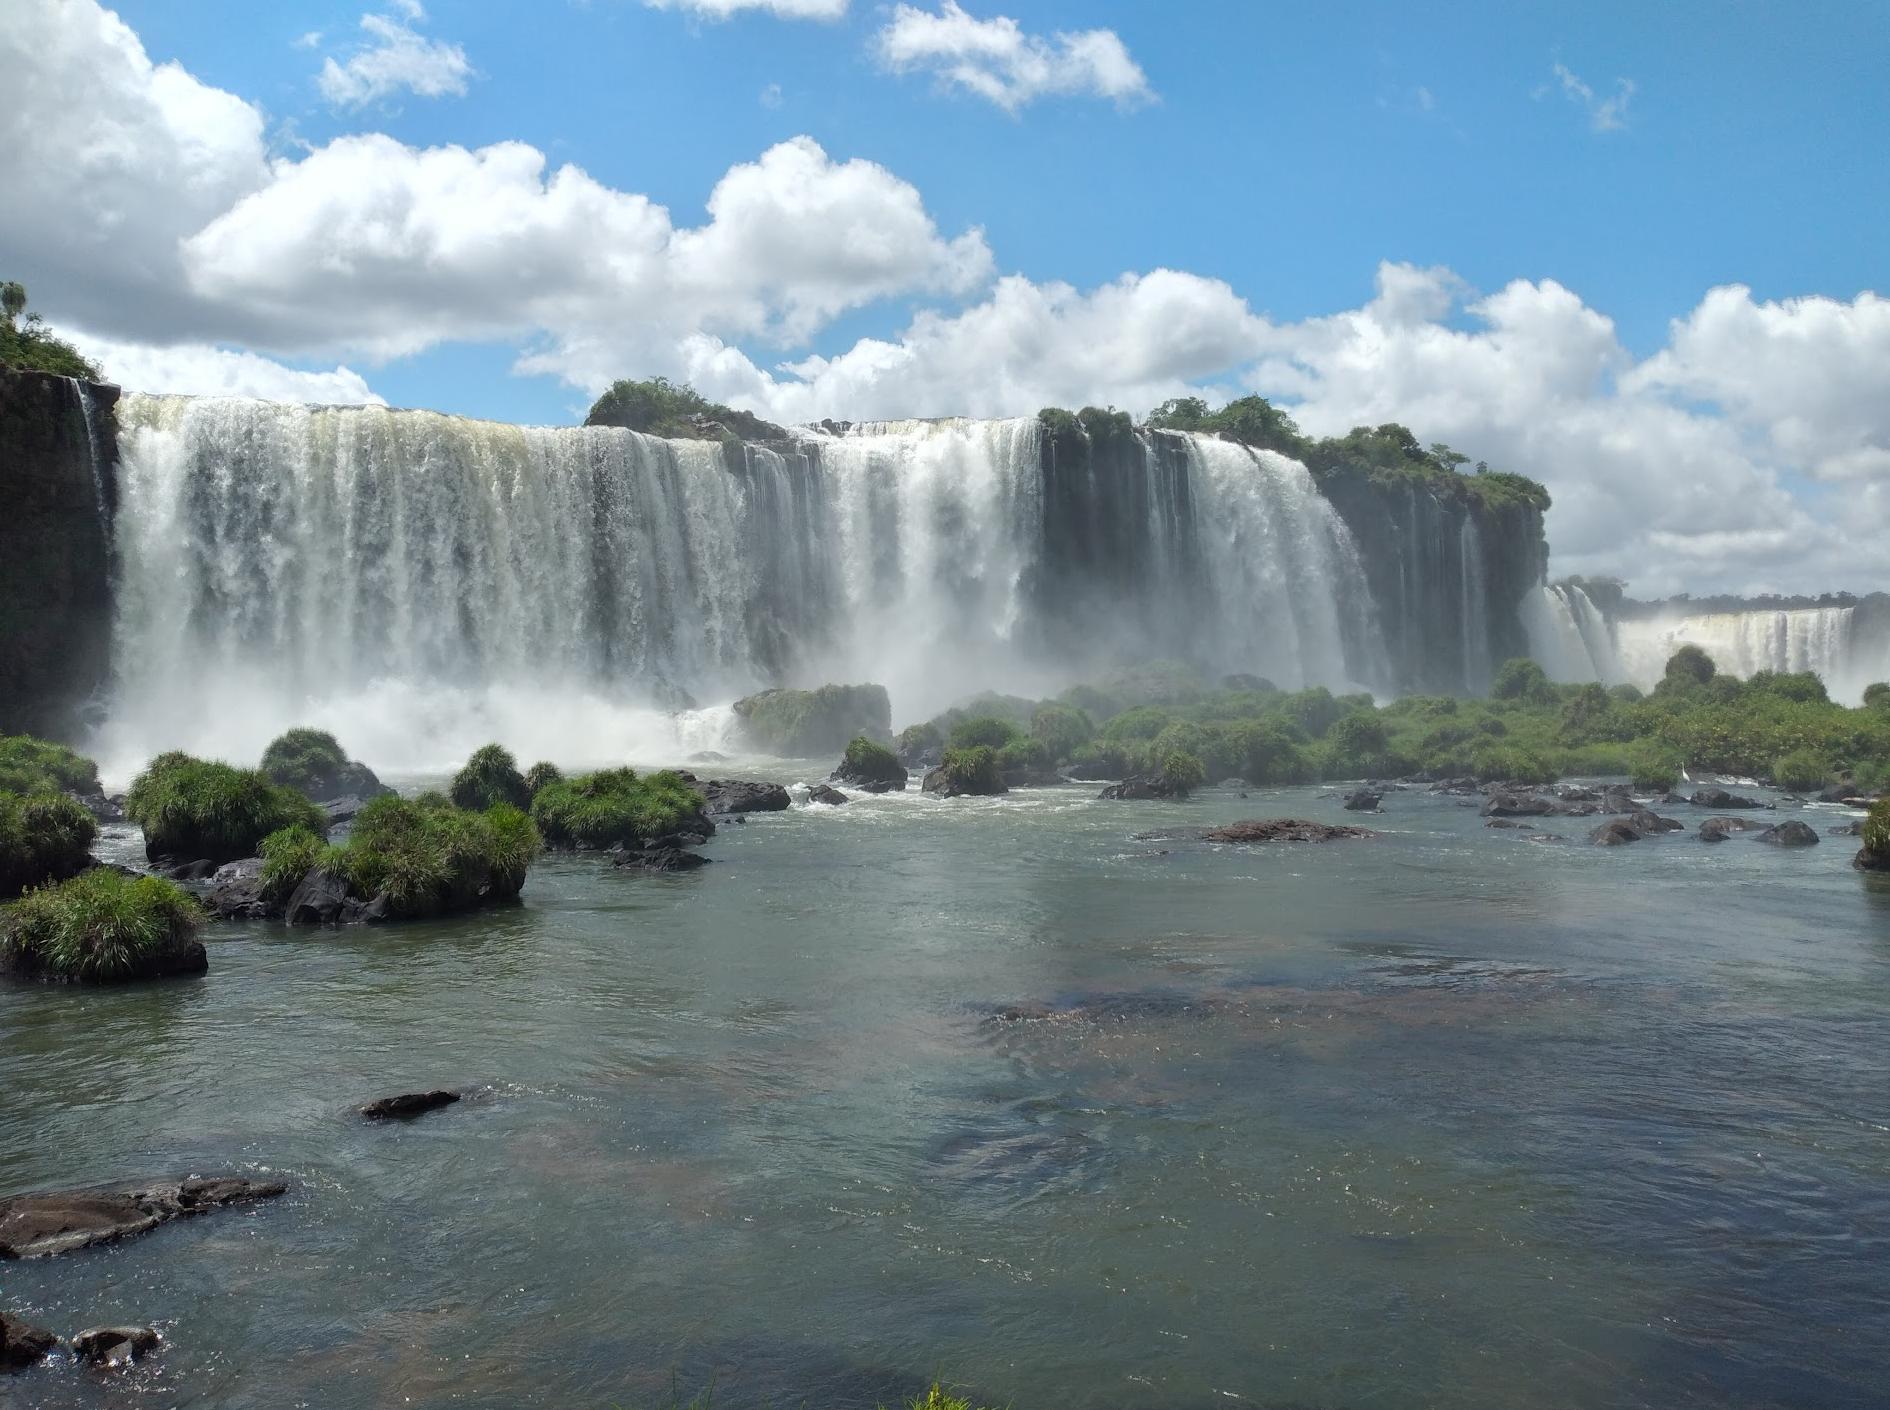 Aqui Cataratas del Iguazu